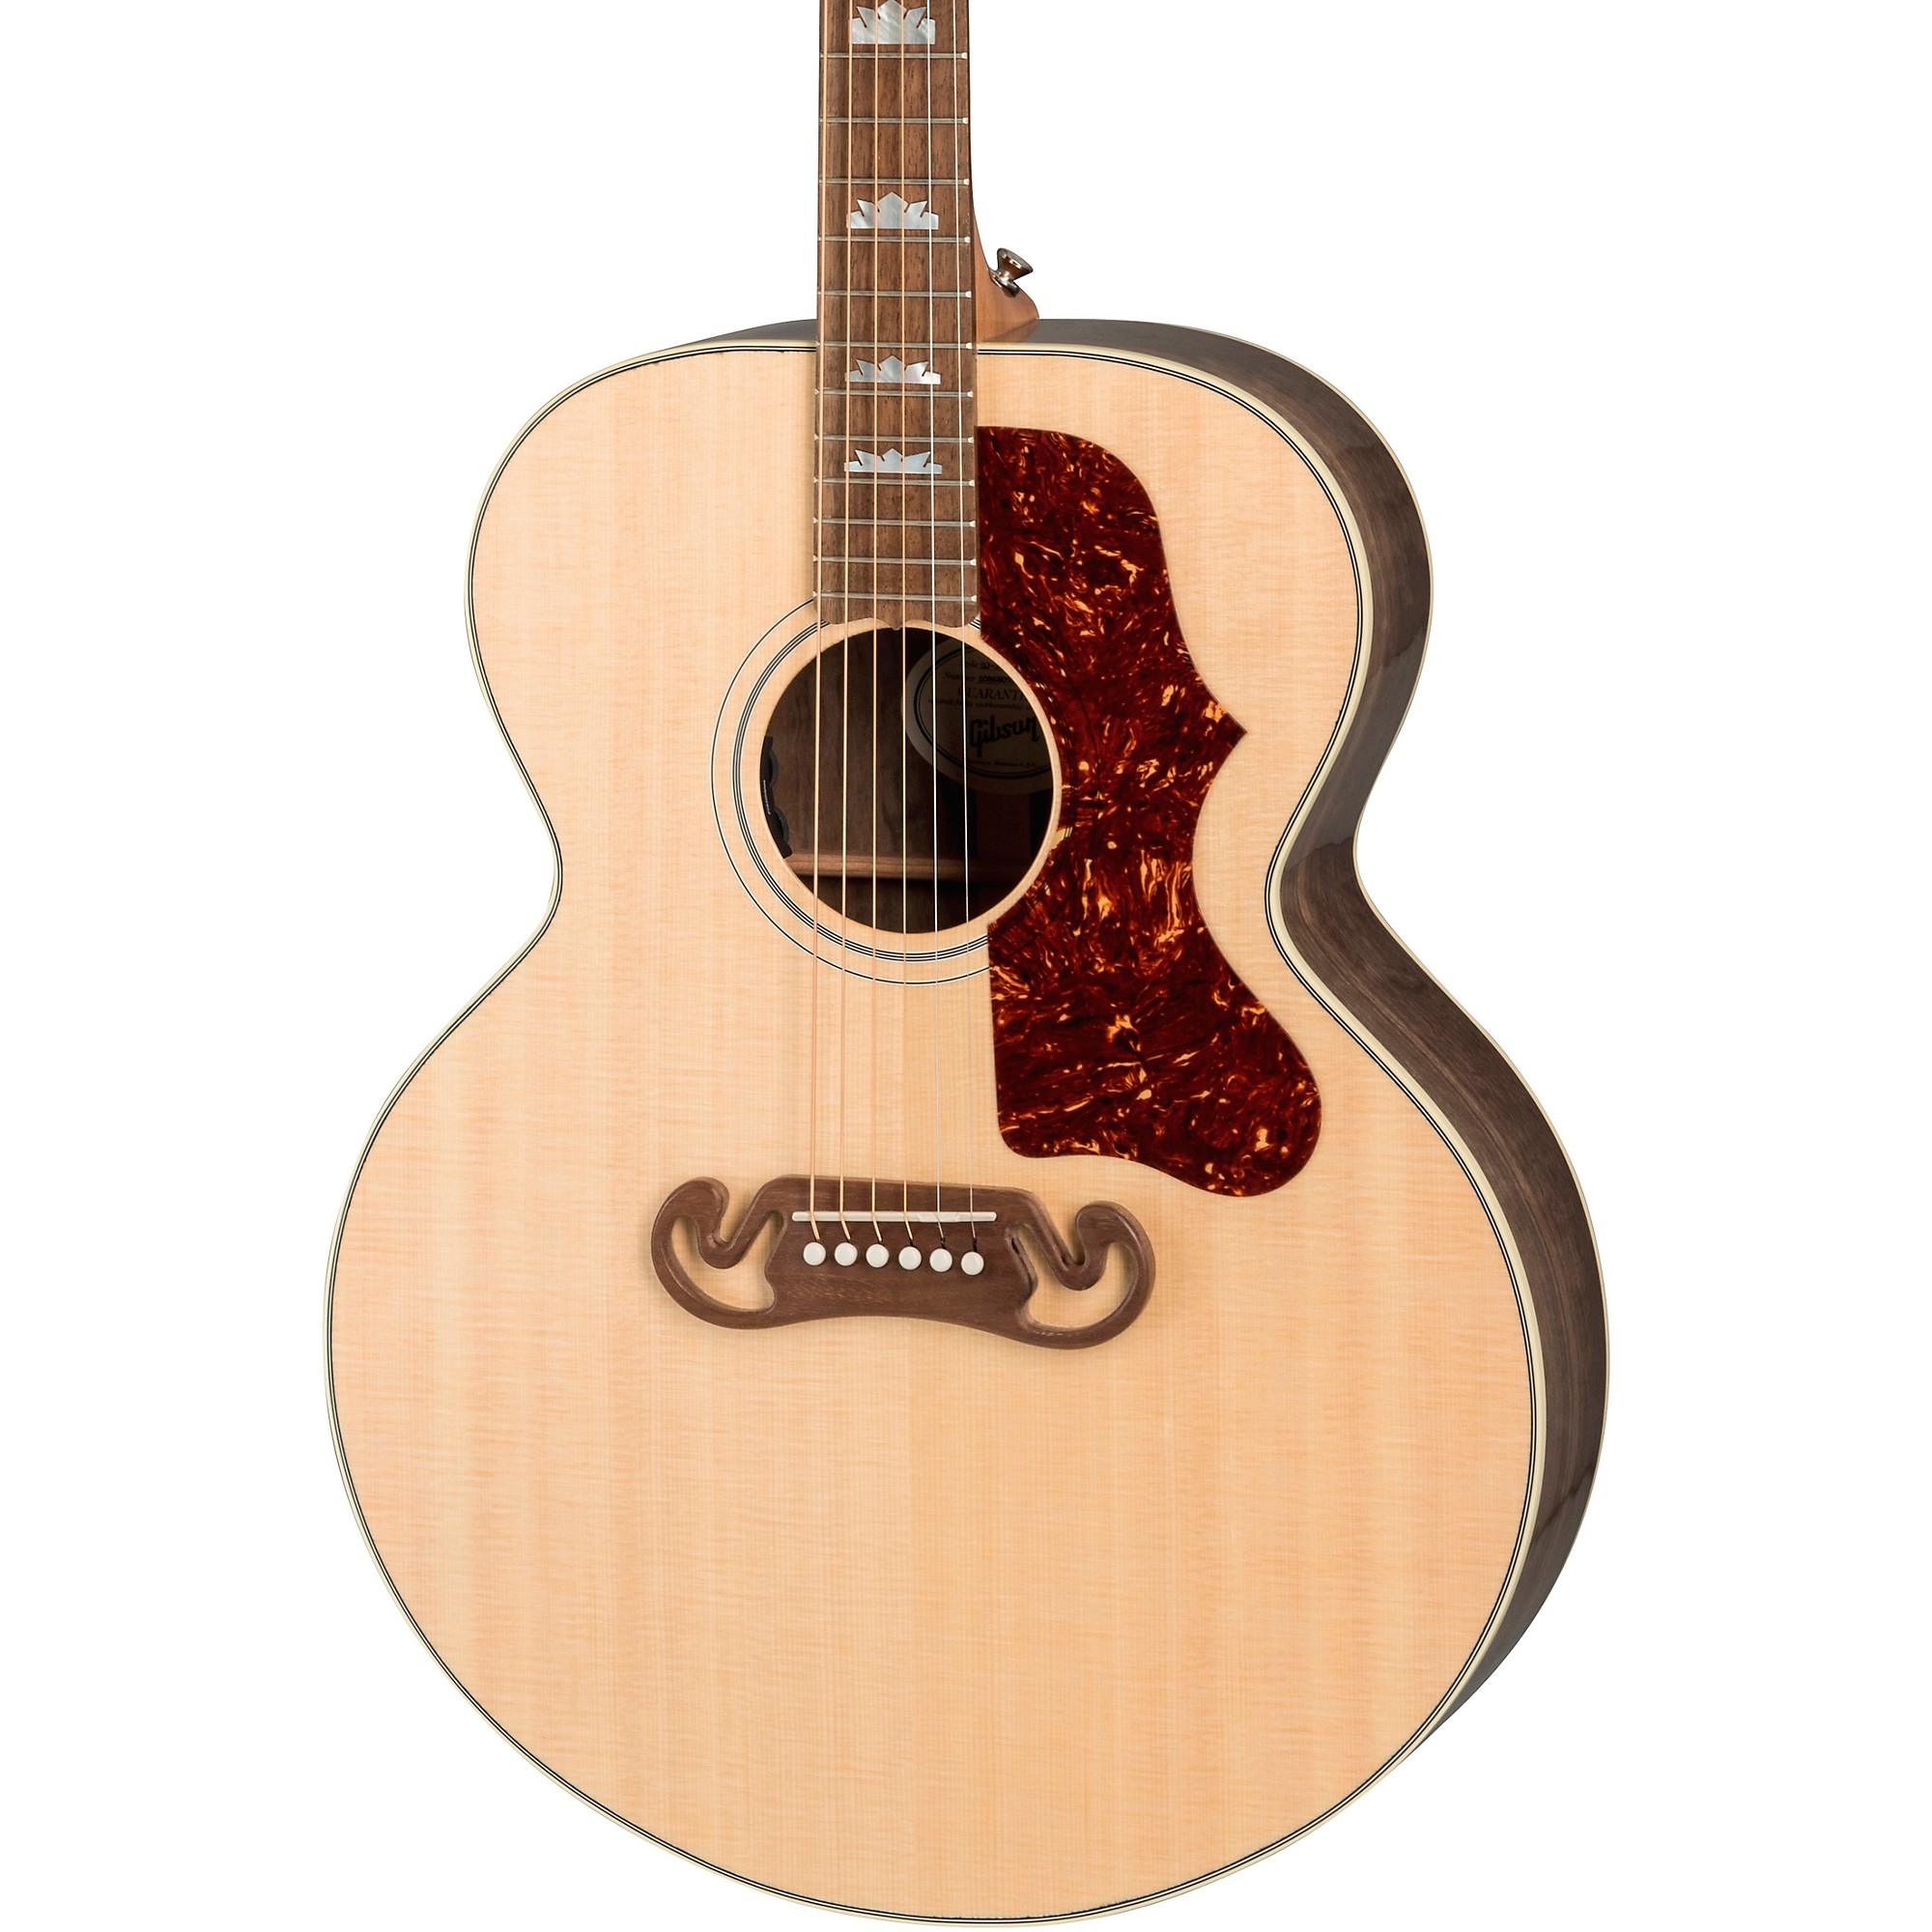 Акустически-электрическая гитара Gibson SJ-200 Studio Walnut Antique Natural акустически электрическая гитара gibson sj 200 studio rosewood antique natural